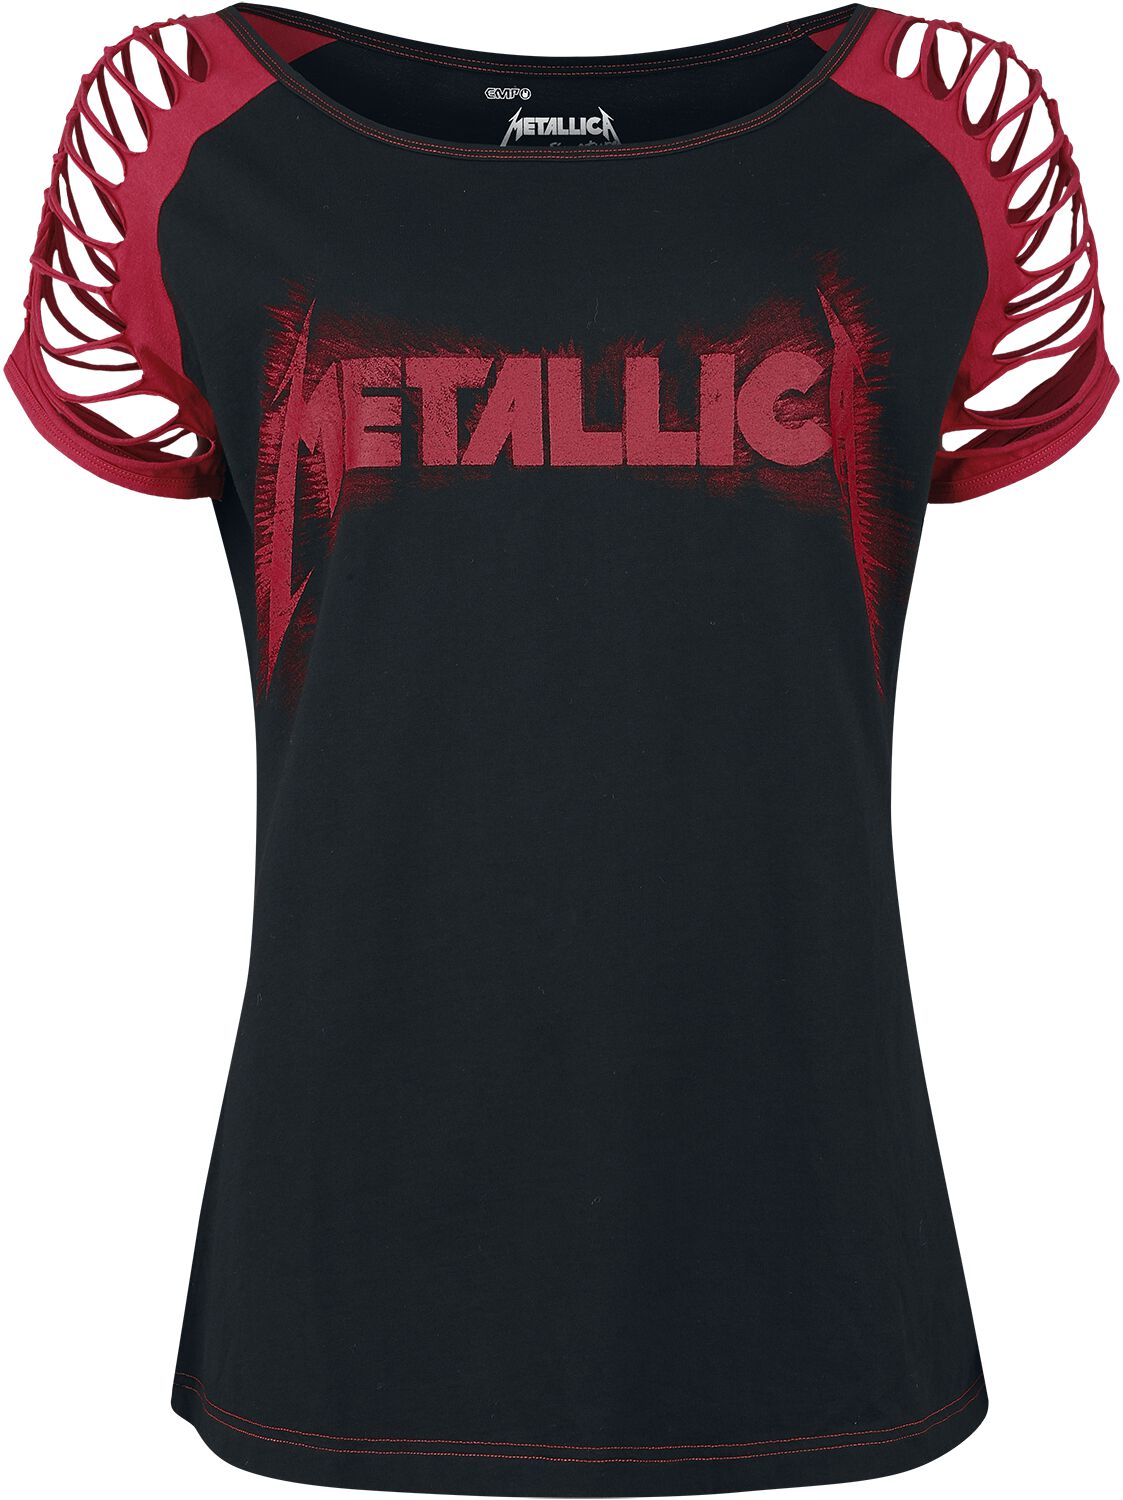 T-Shirt Manches courtes de Metallica - - S à XL - pour Femme - noir/rouge